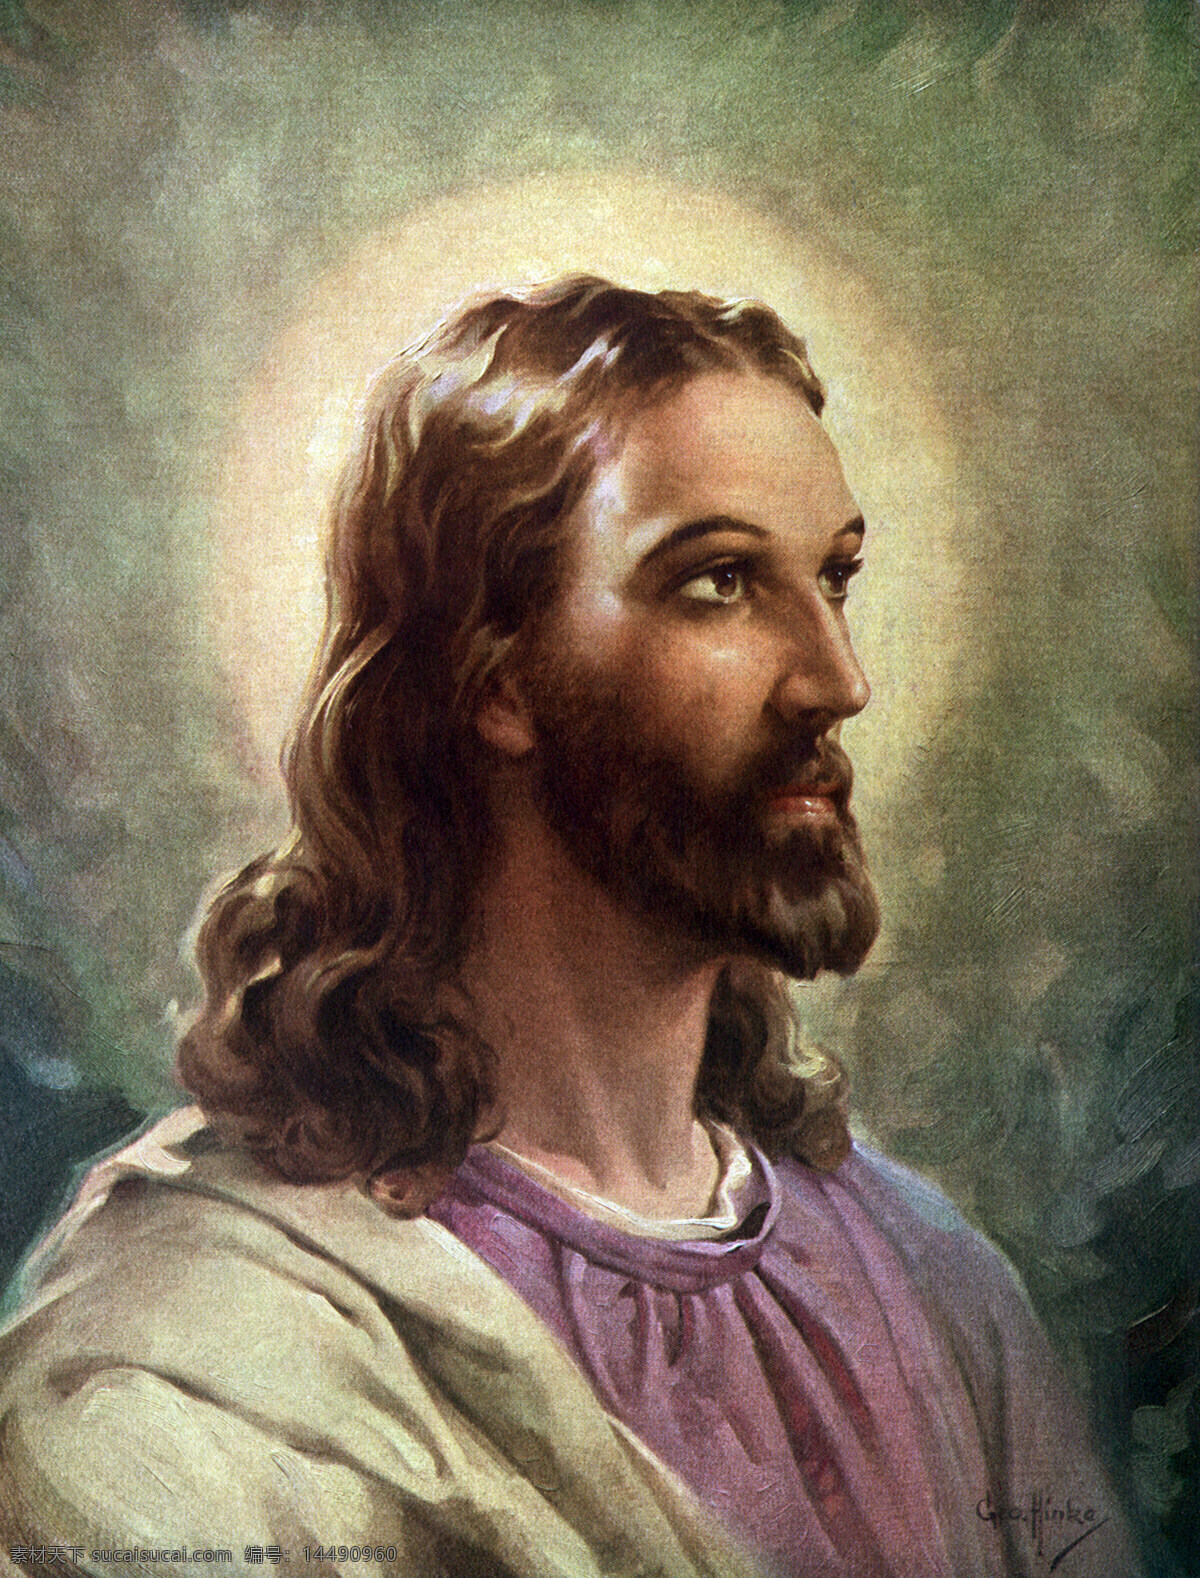 基督教 主题 信教徒 高清图片 耶稣 保佑 文化 高清 系列 宗教信仰 文化艺术